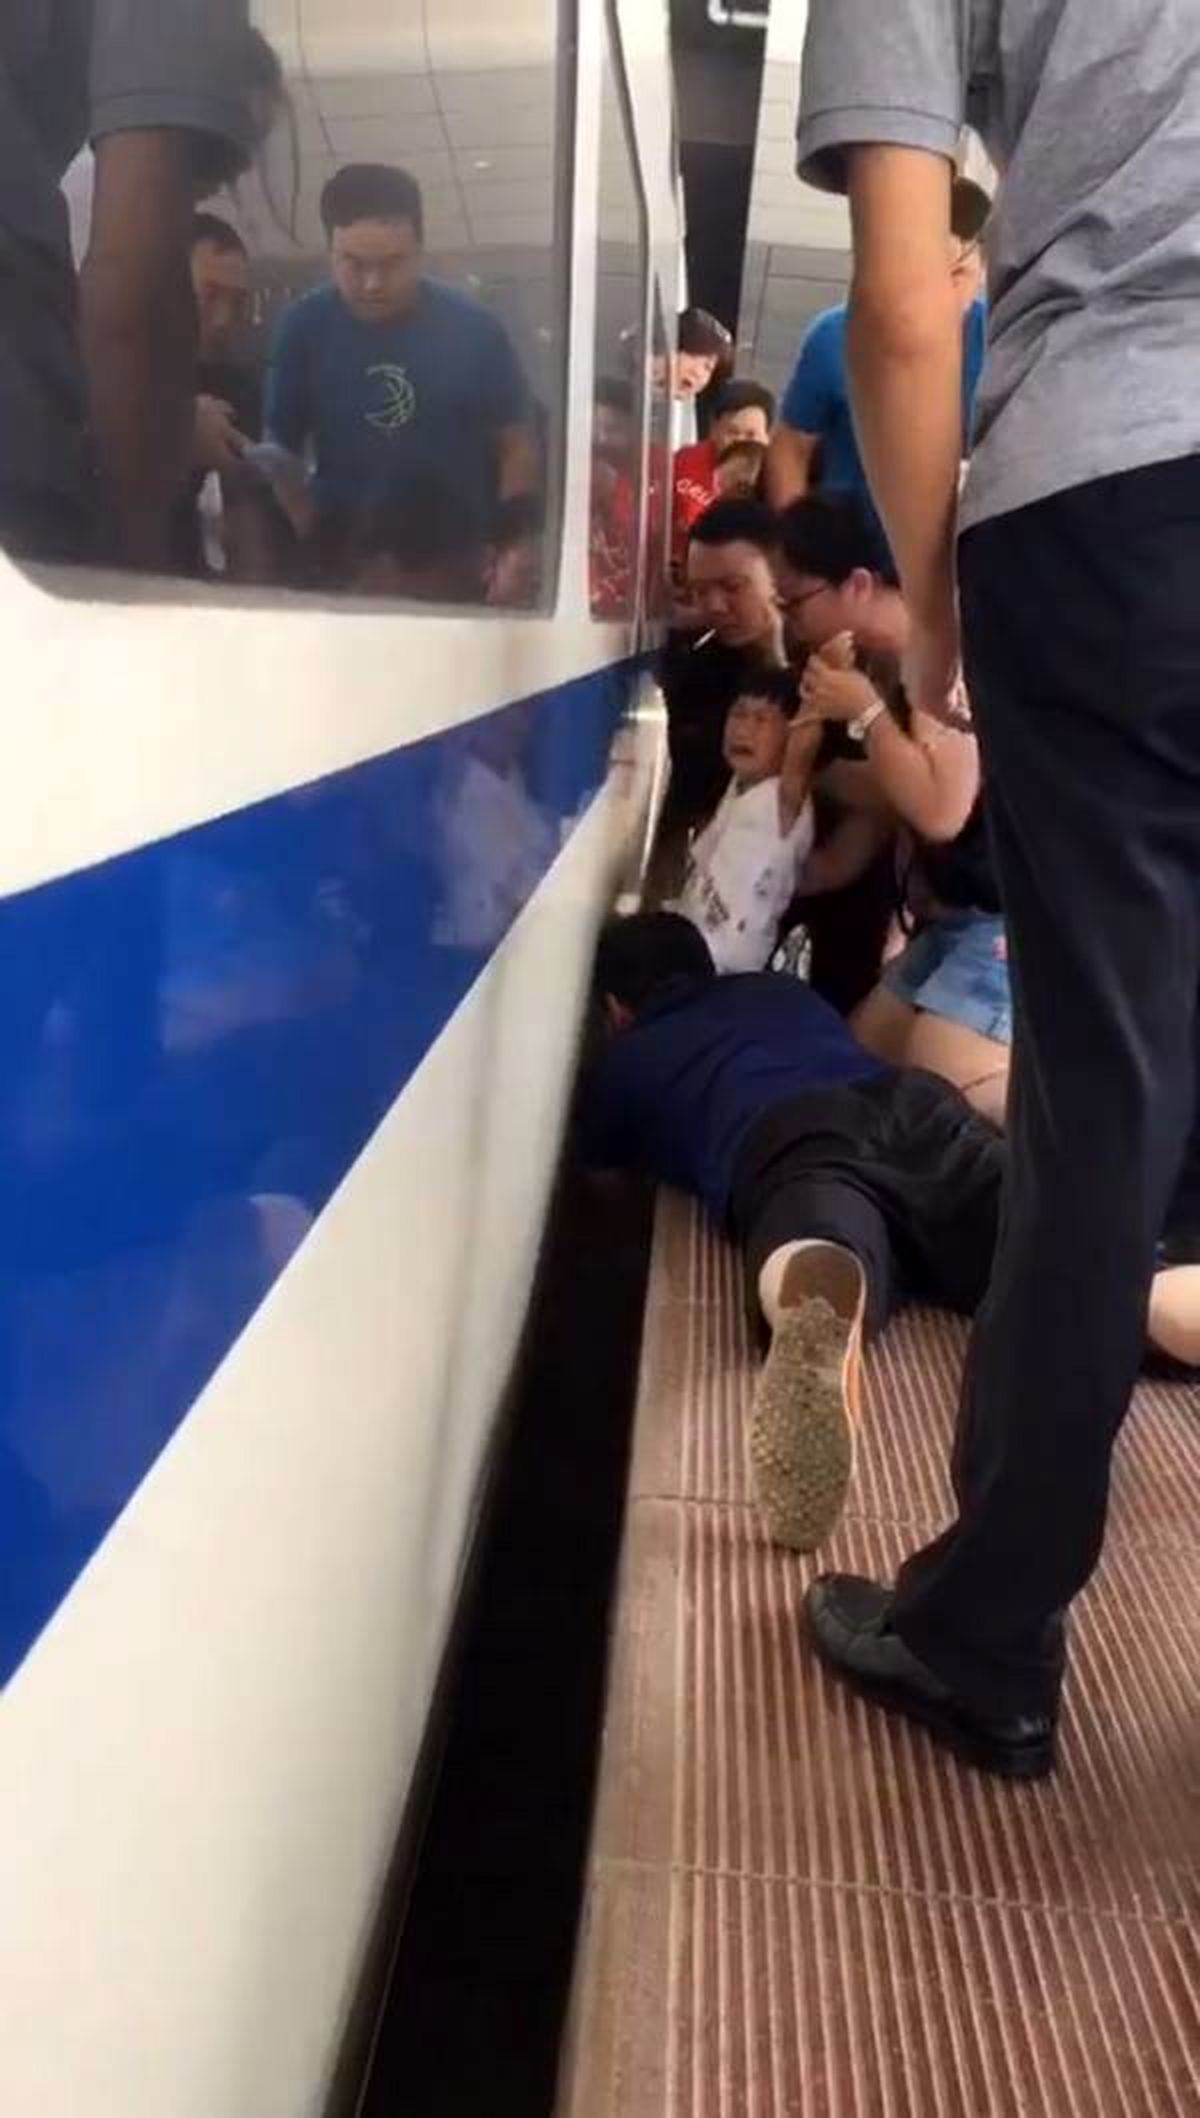 لحظات نفس‌گیر نجات کودکی که زیر مترو افتاده بود+ عکس